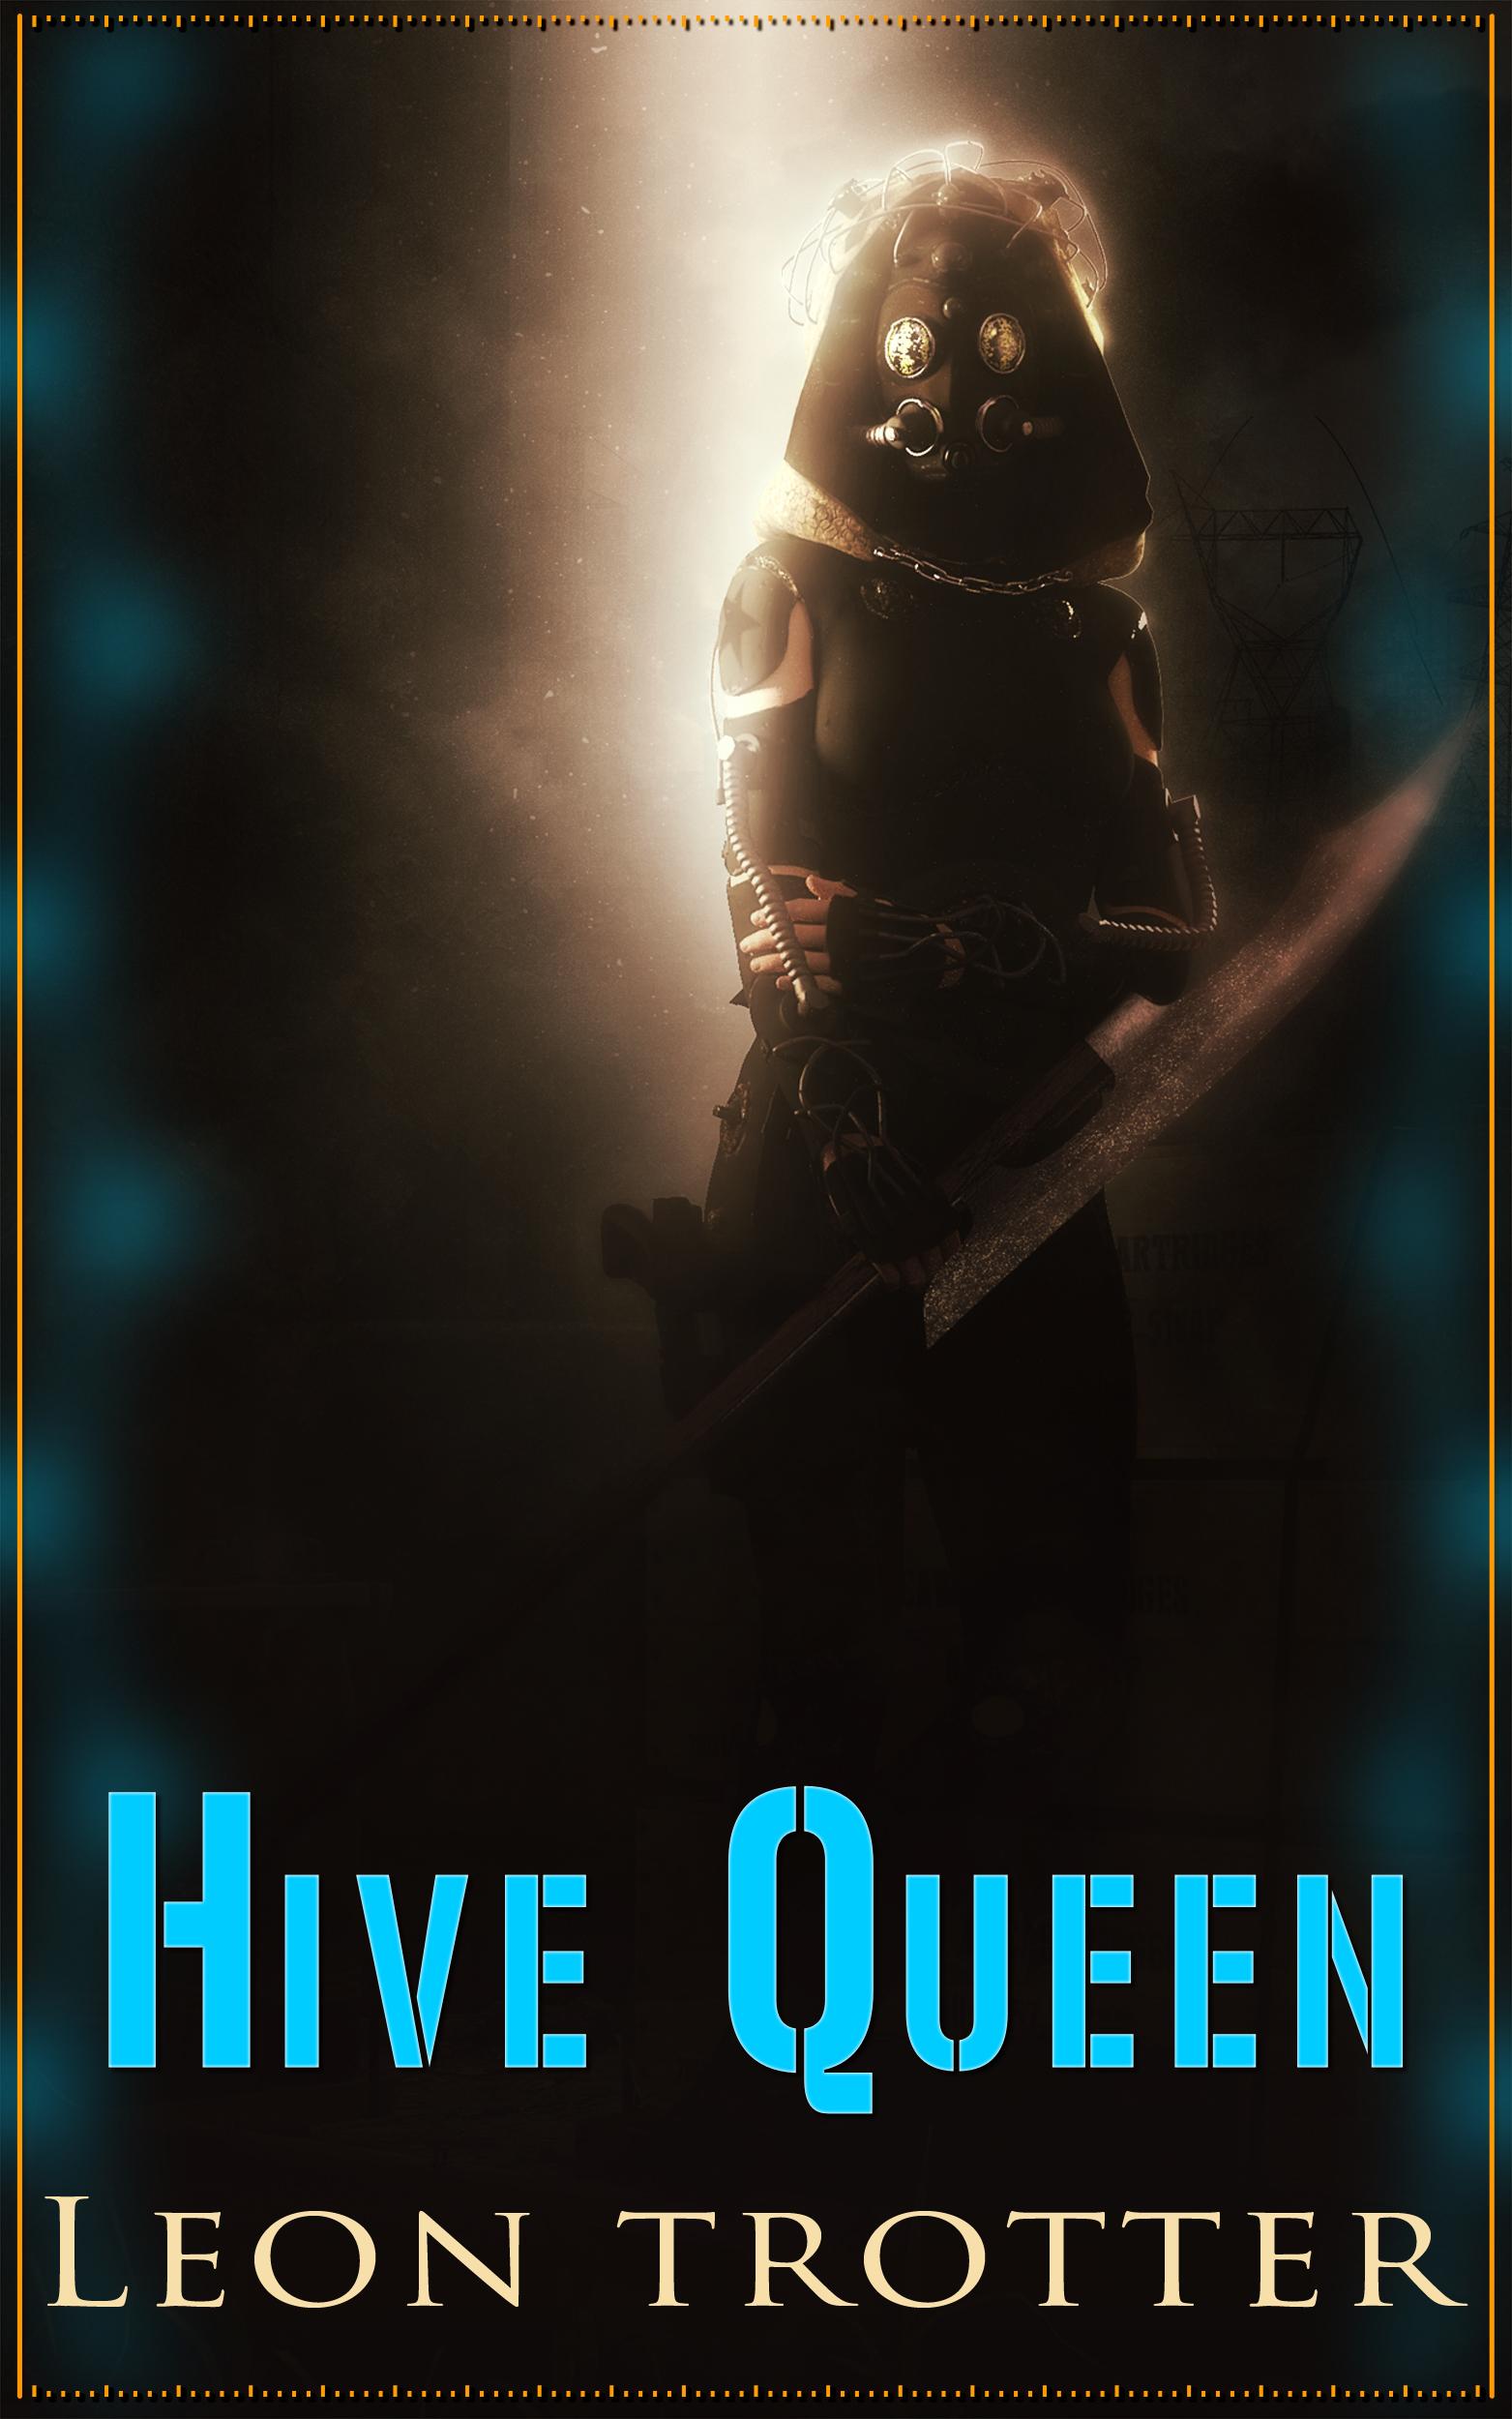 Hive queen